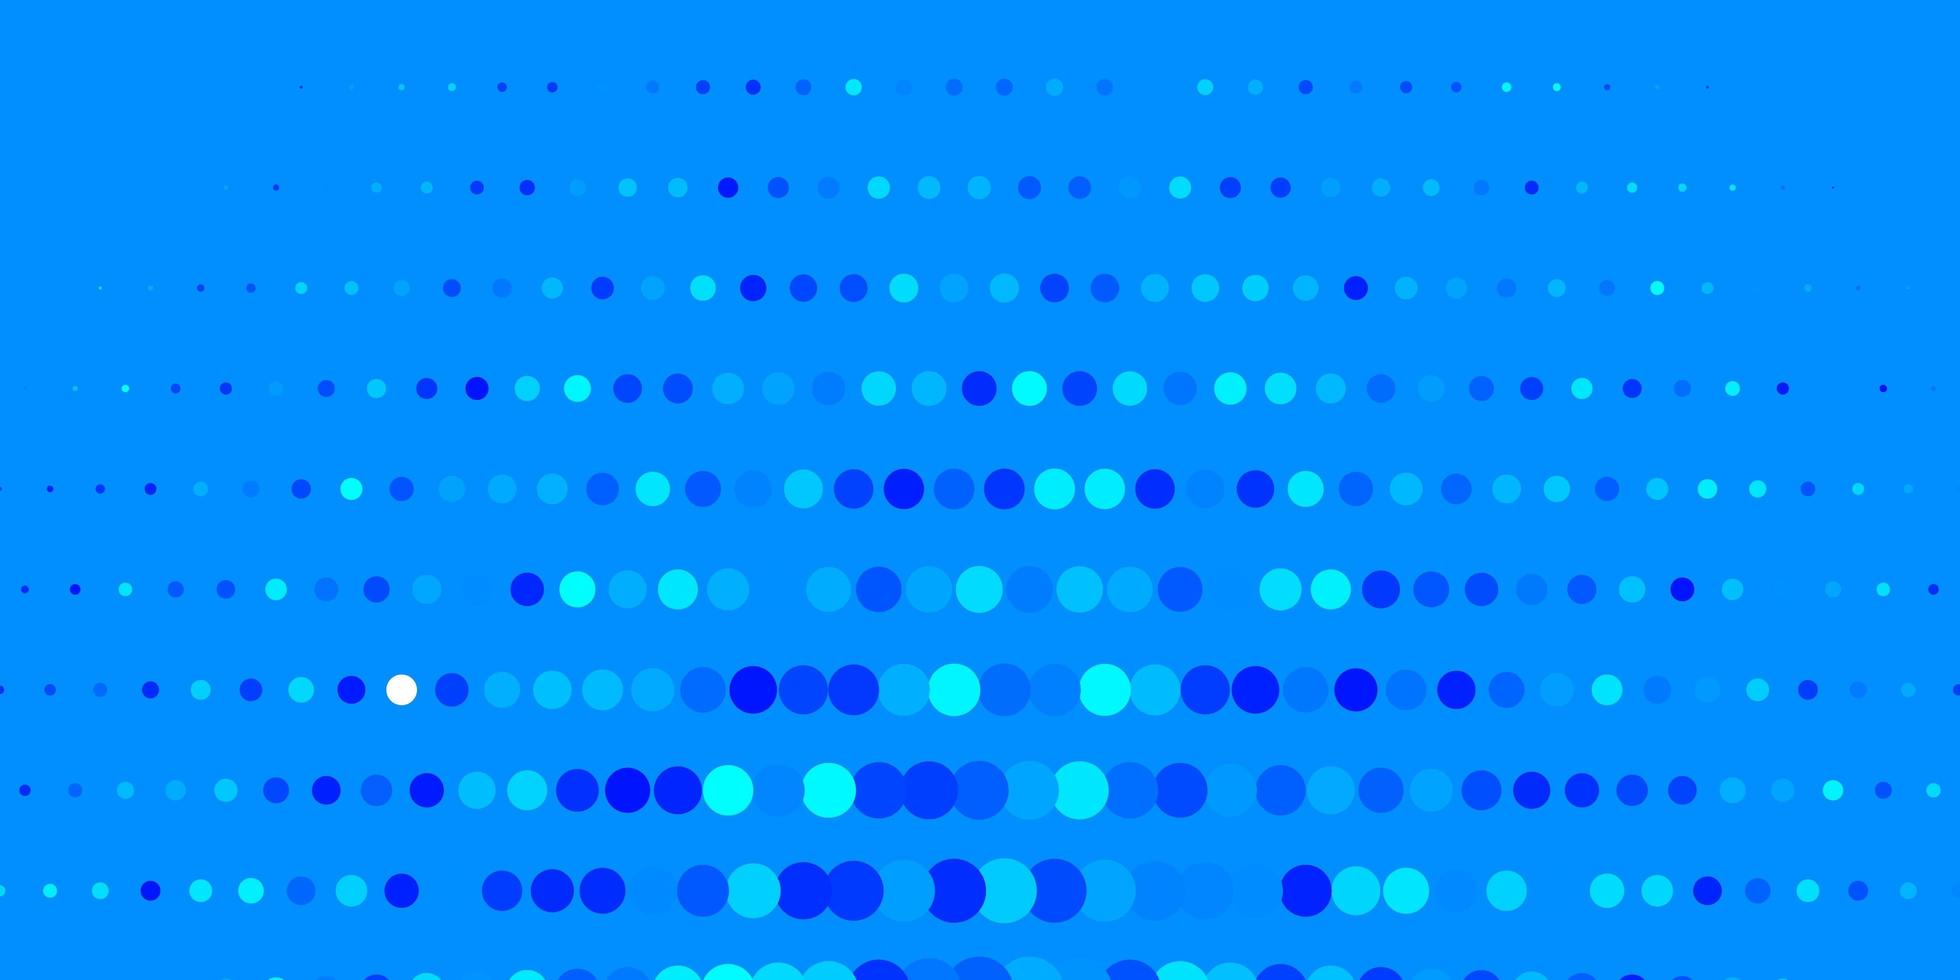 sfondo vettoriale azzurro con cerchi.